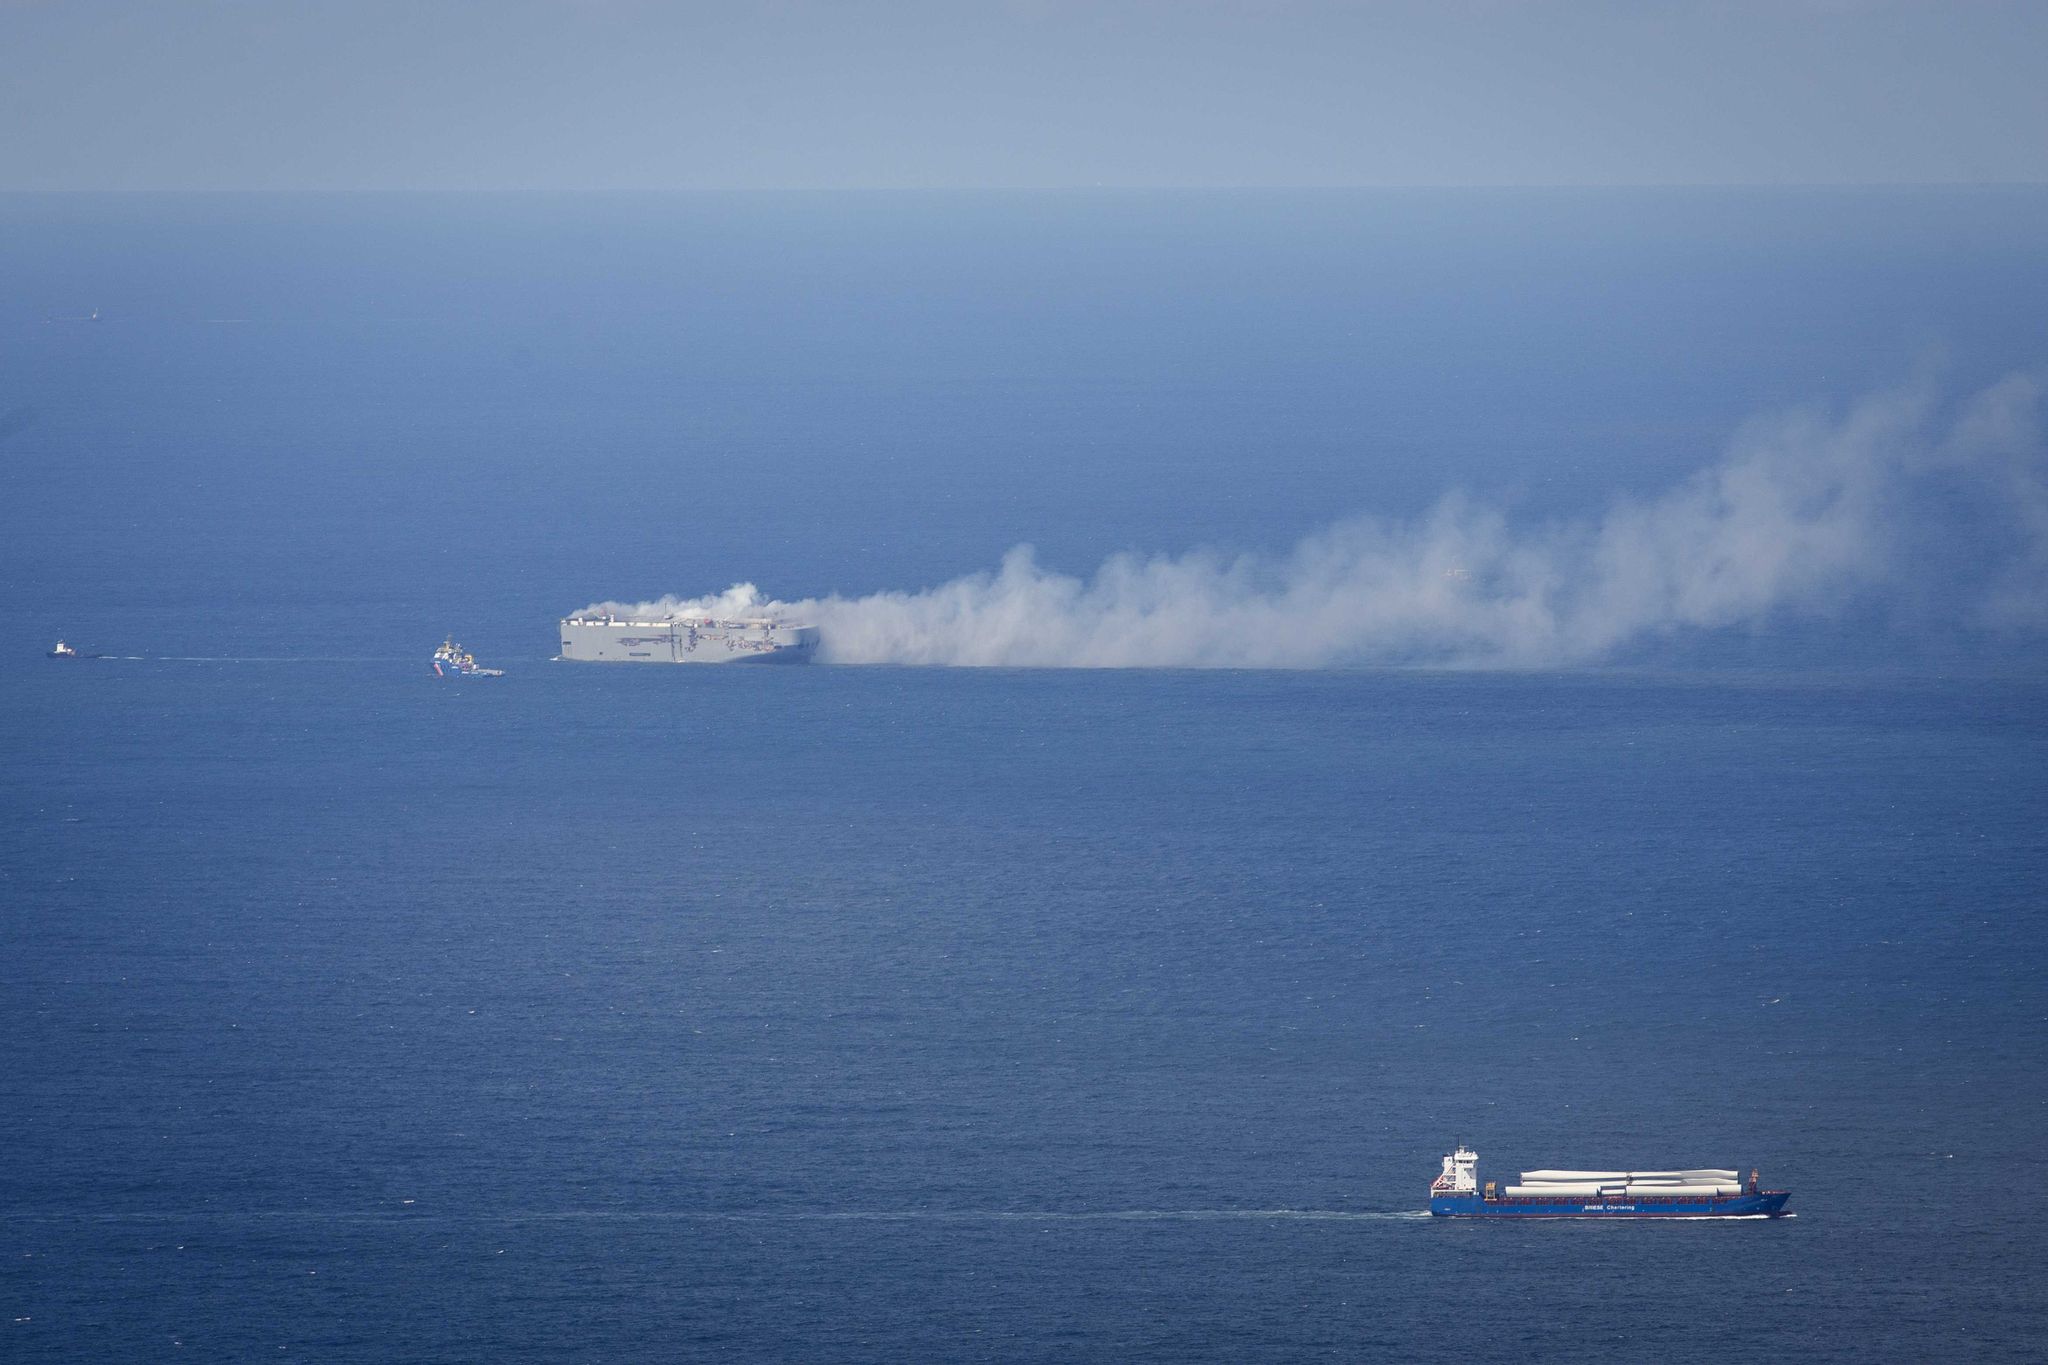 Der Frachter «Fremantle Highway» brennt in der Nordsee oberhalb von Ameland.